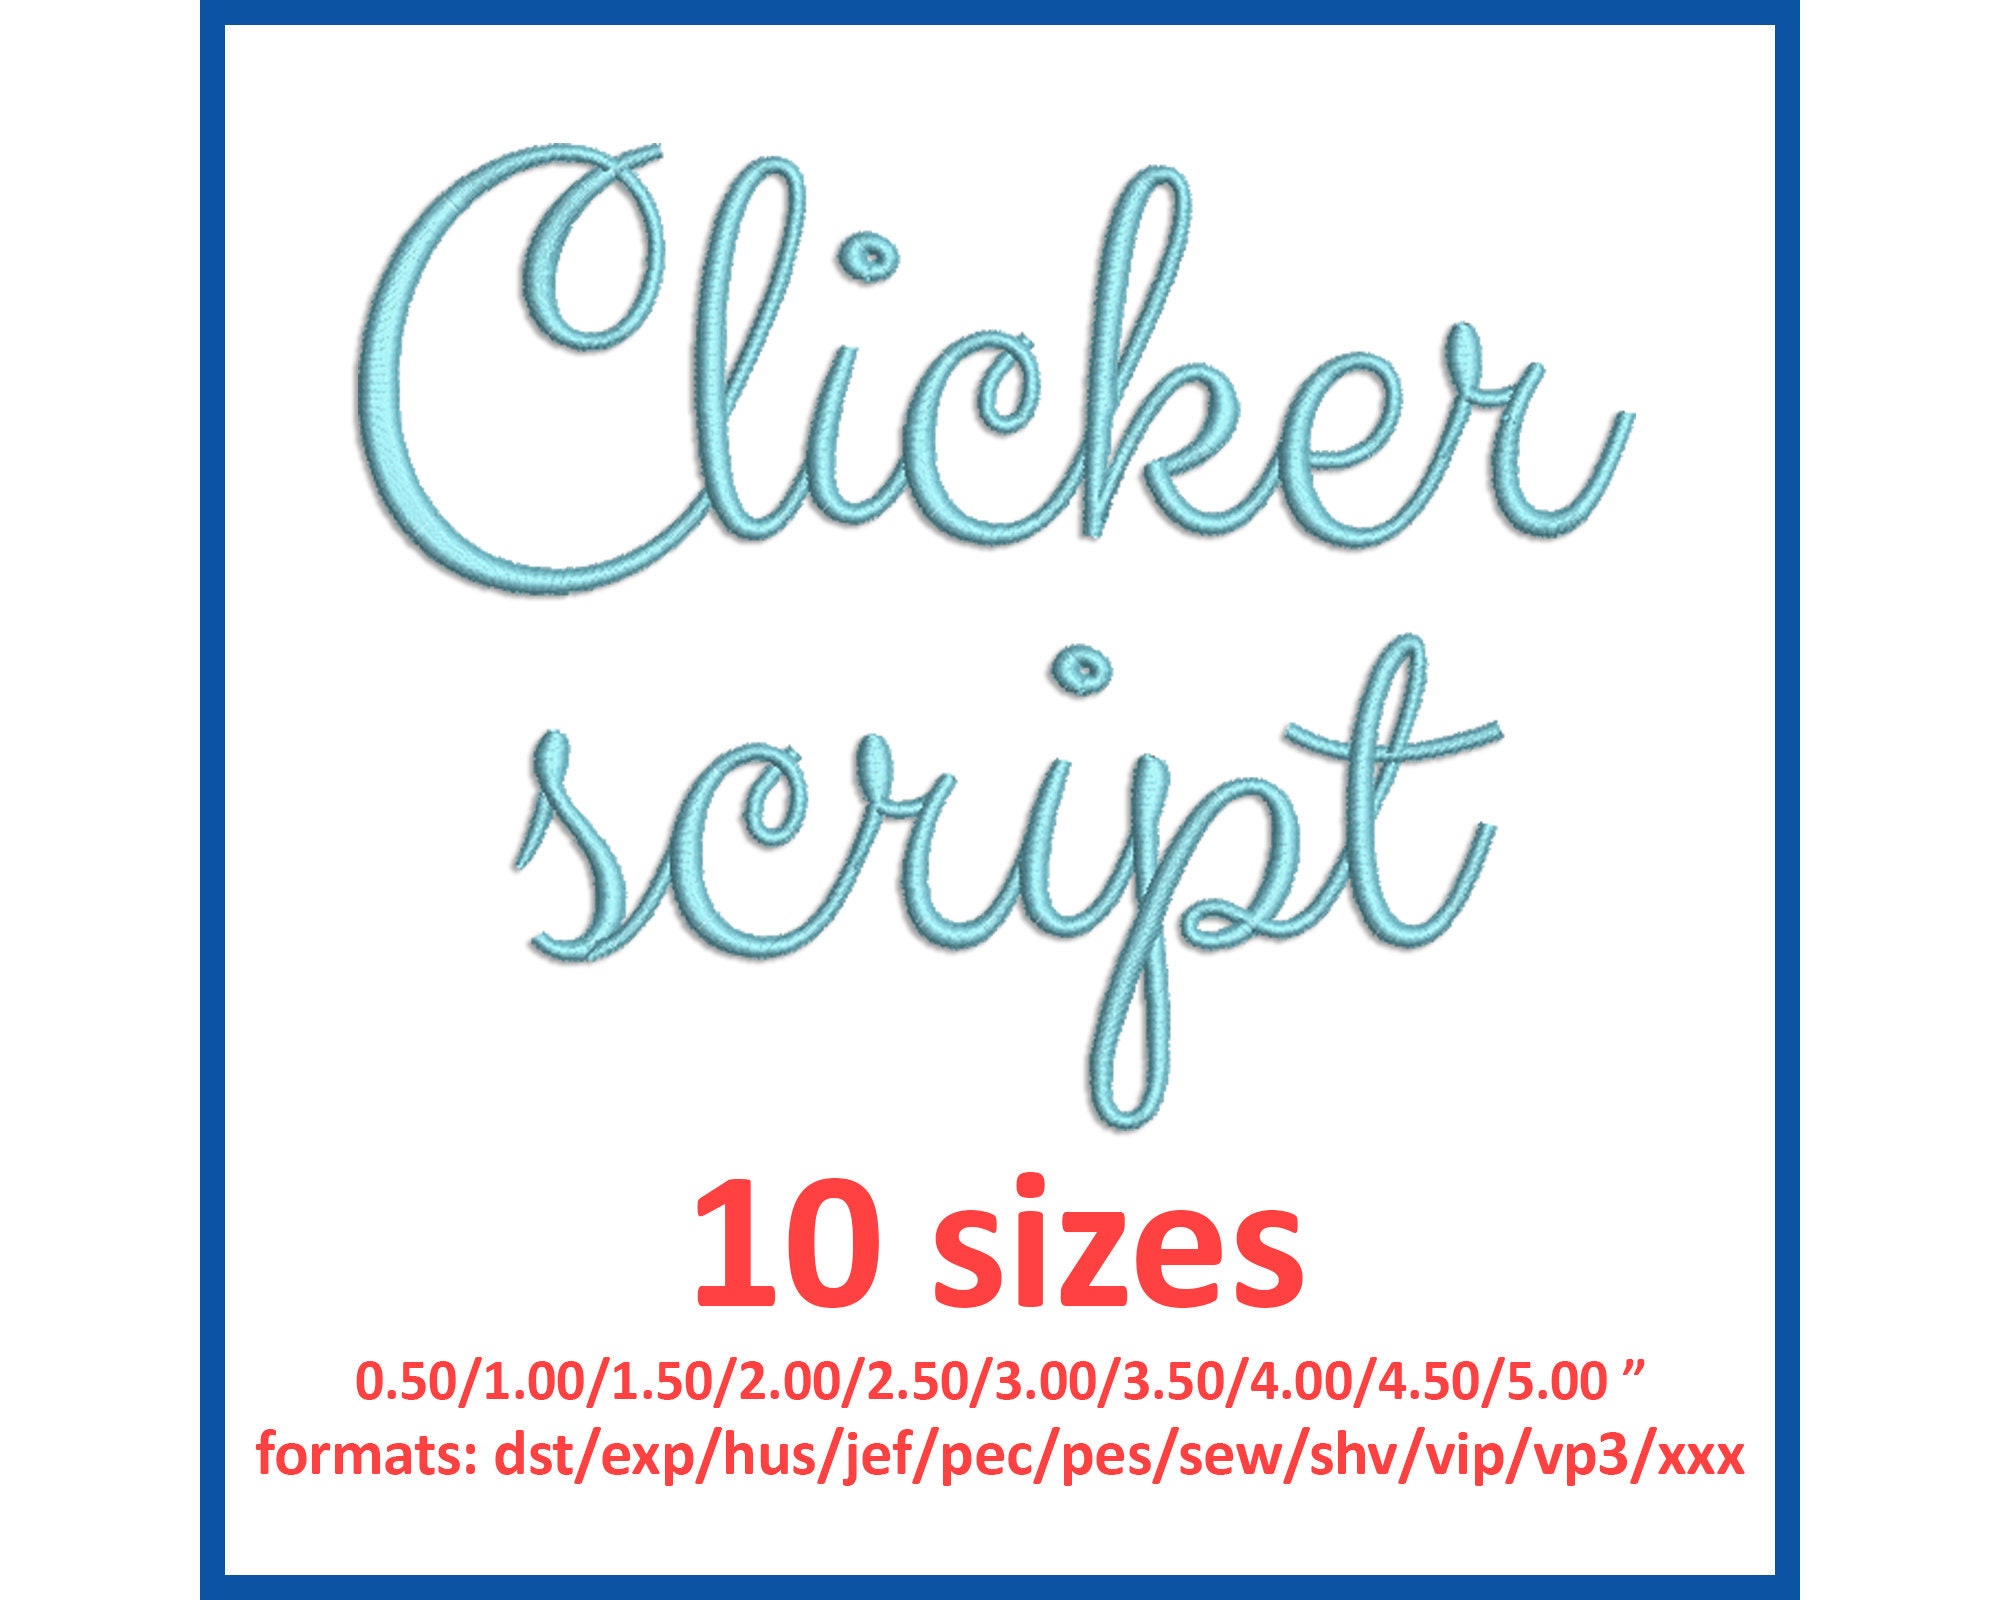 Clicker Script Font Download